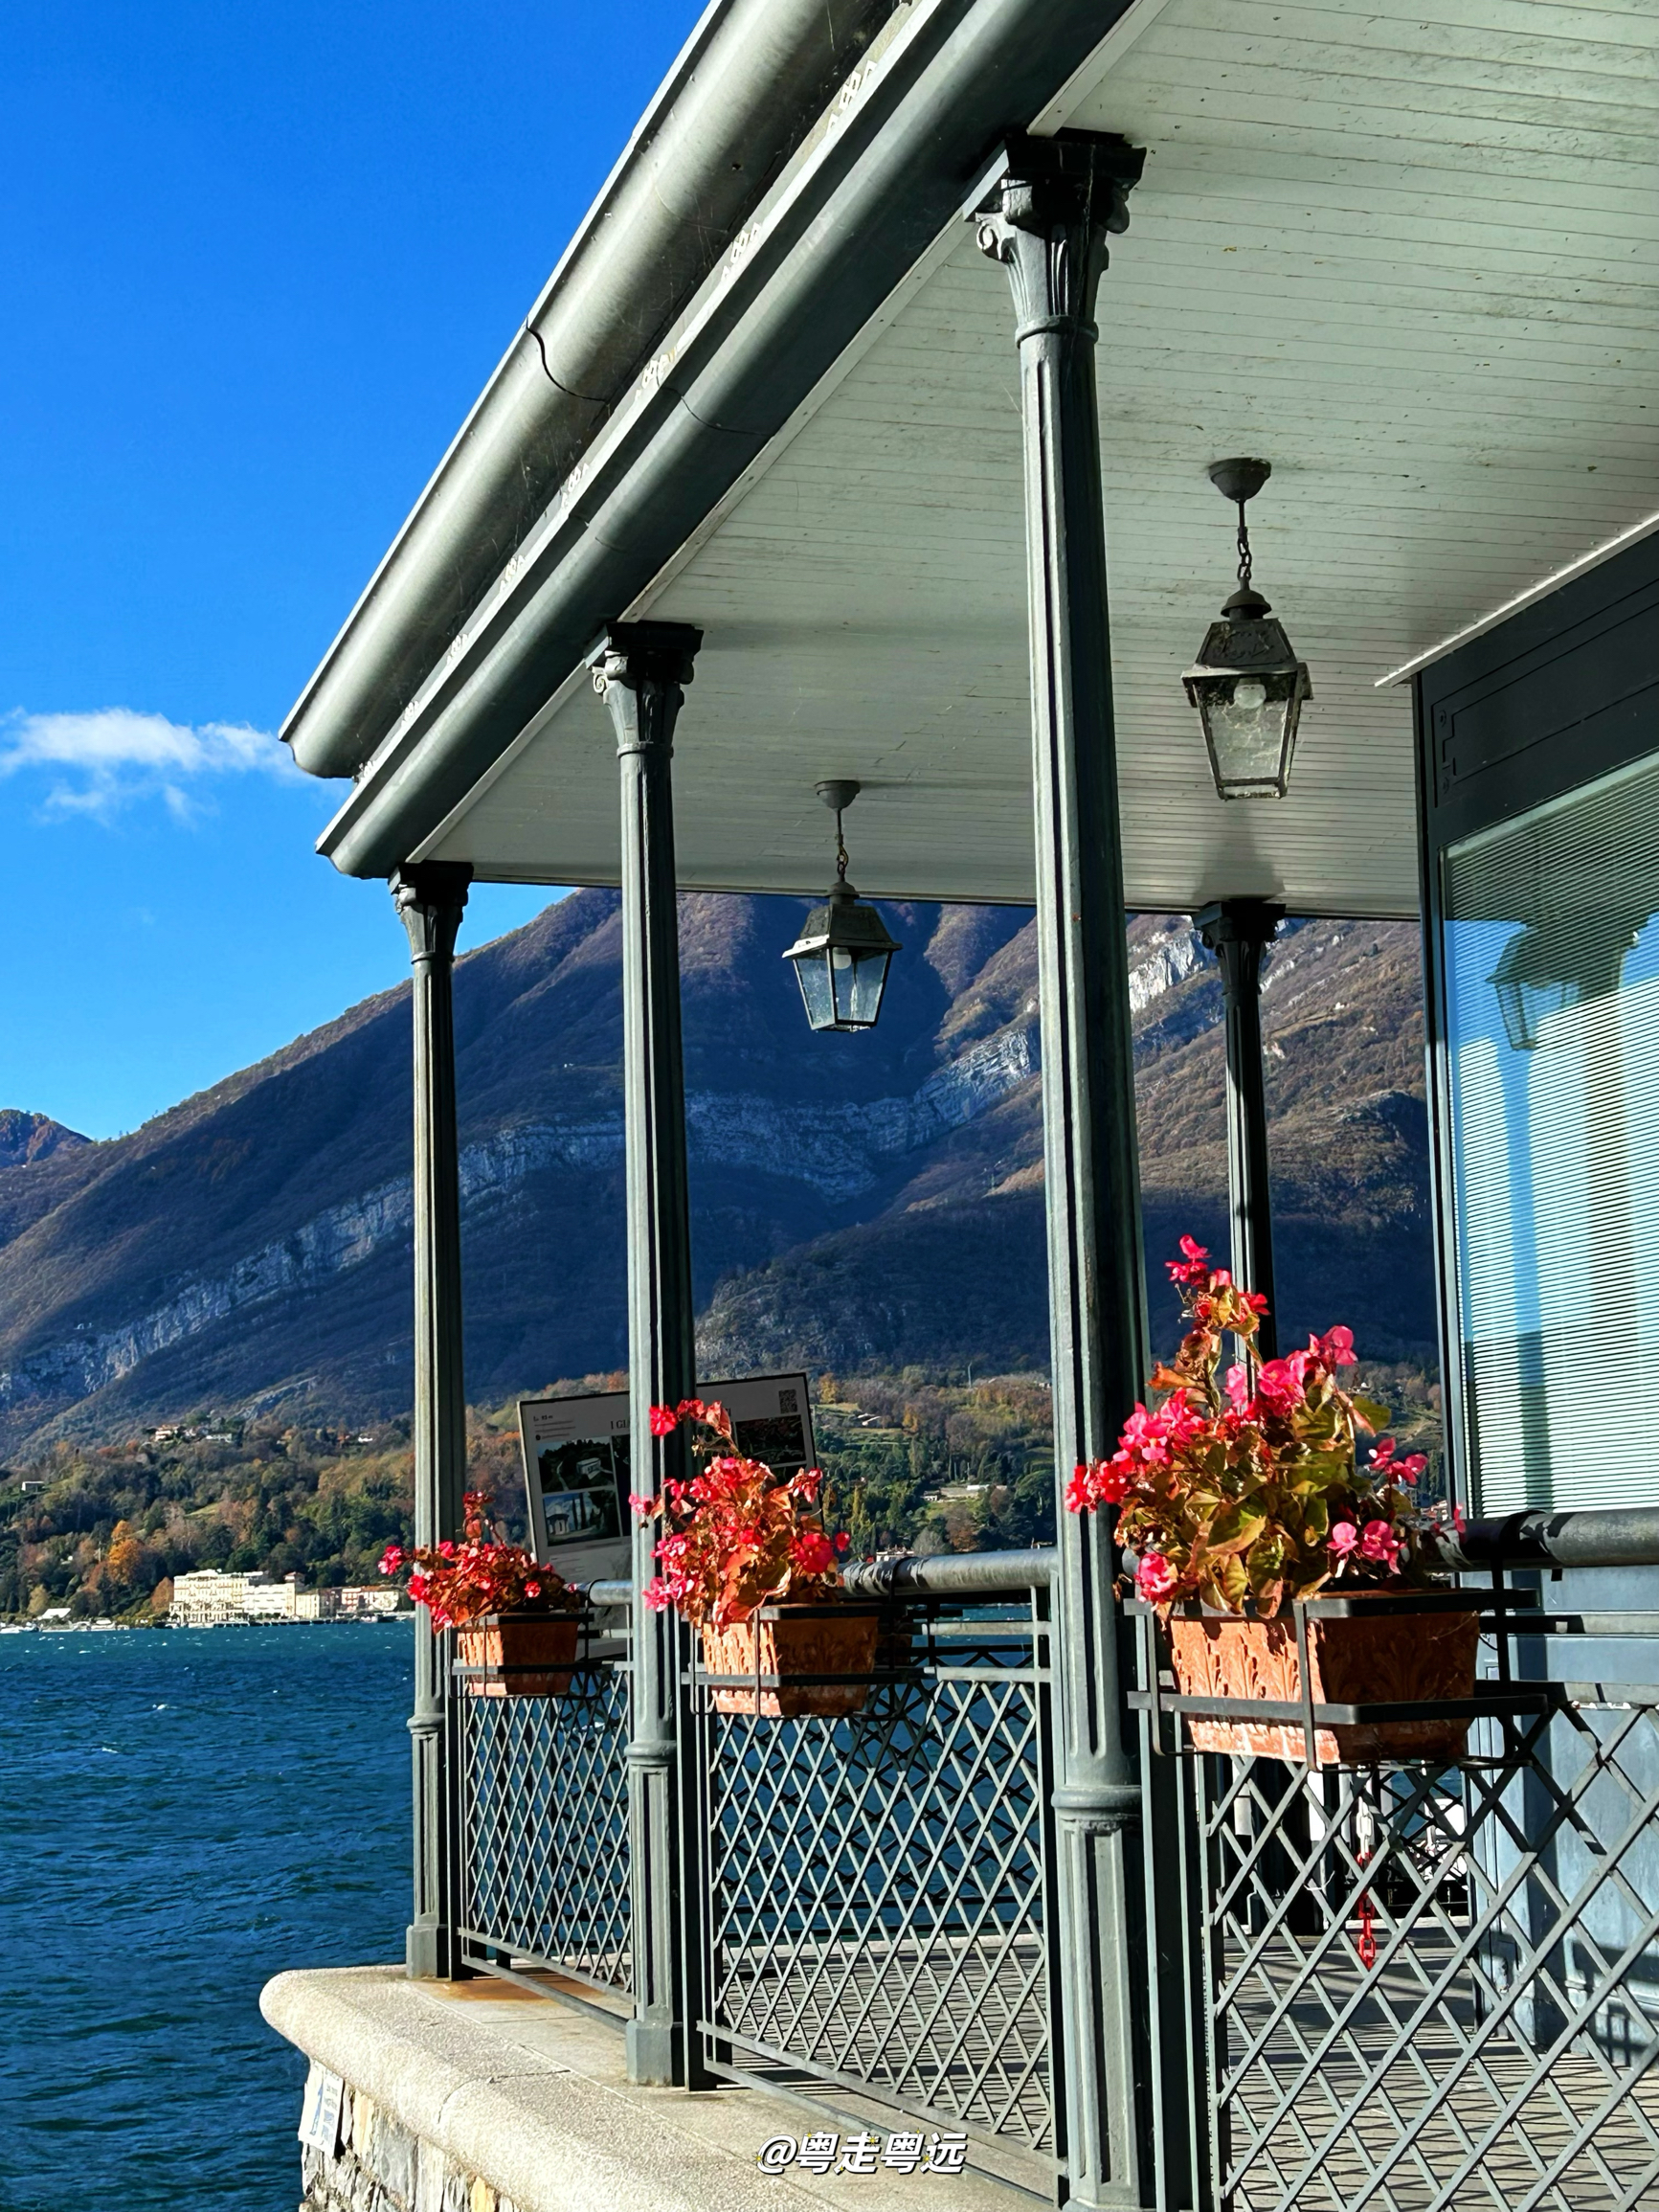 意大利科莫湖贝拉焦 欧洲最美的湖边小镇 详细攻略